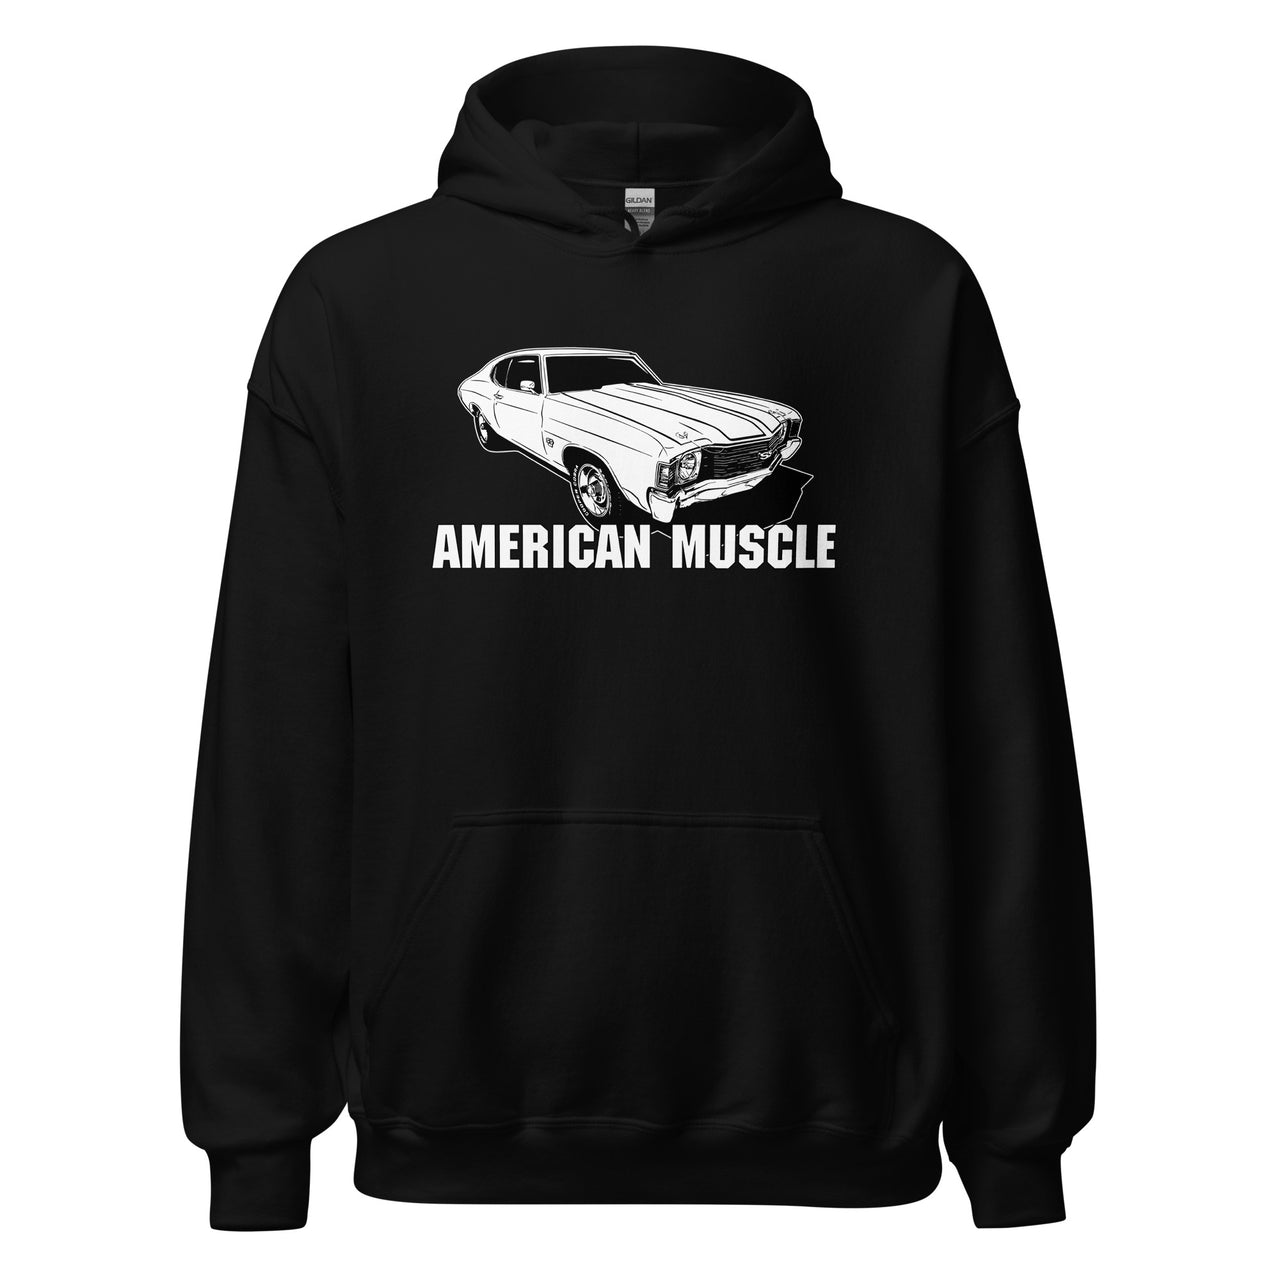 1972 Chevelle Car Hoodie American Muscle Car Sweatshirt in black